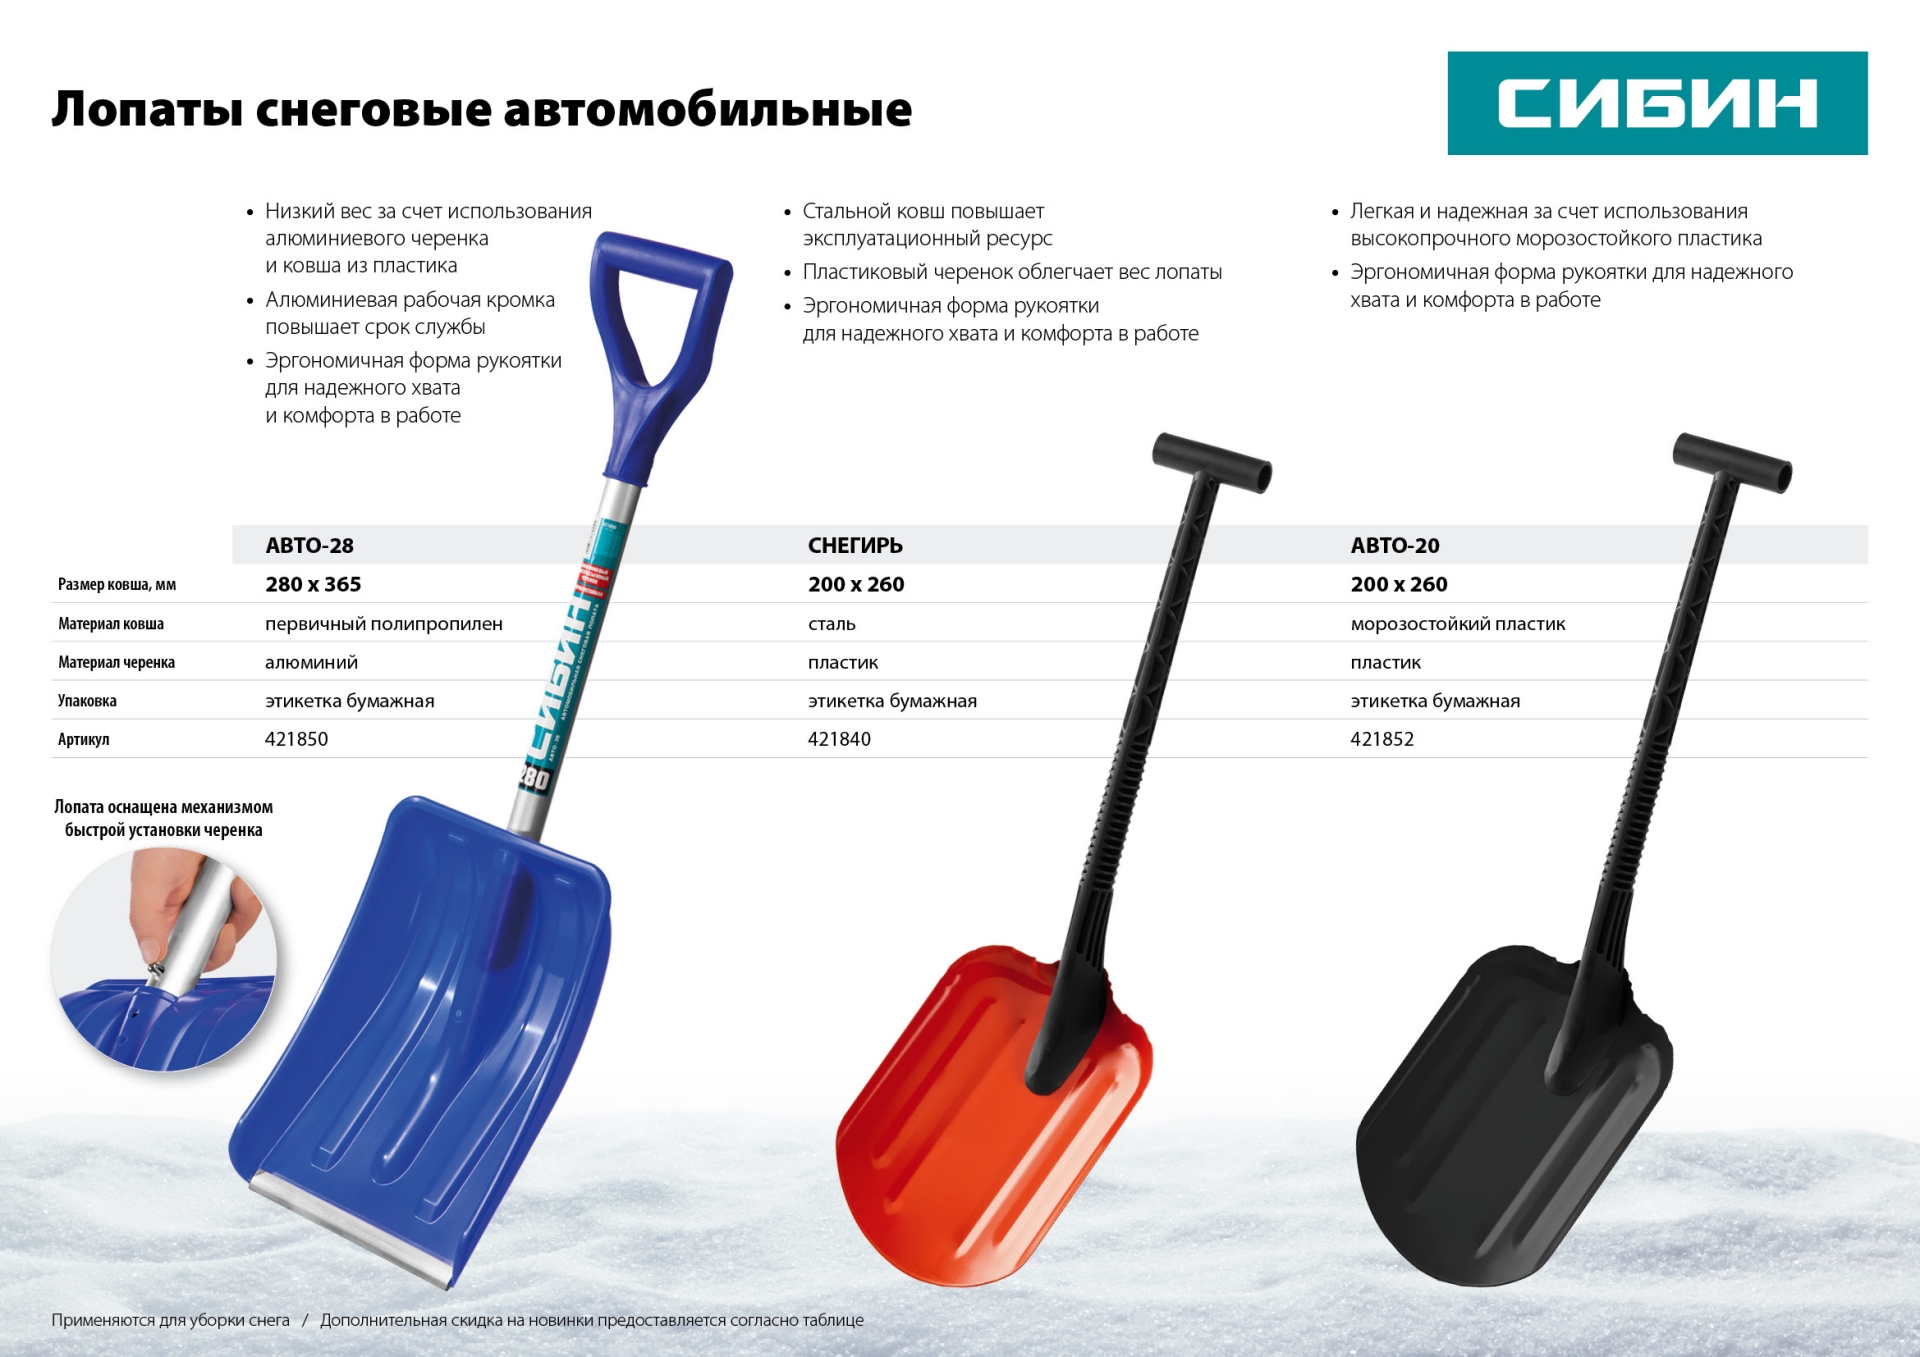 Автомобильная Снеговая лопата СИБИН АВТО-20 200 мм пластиковая